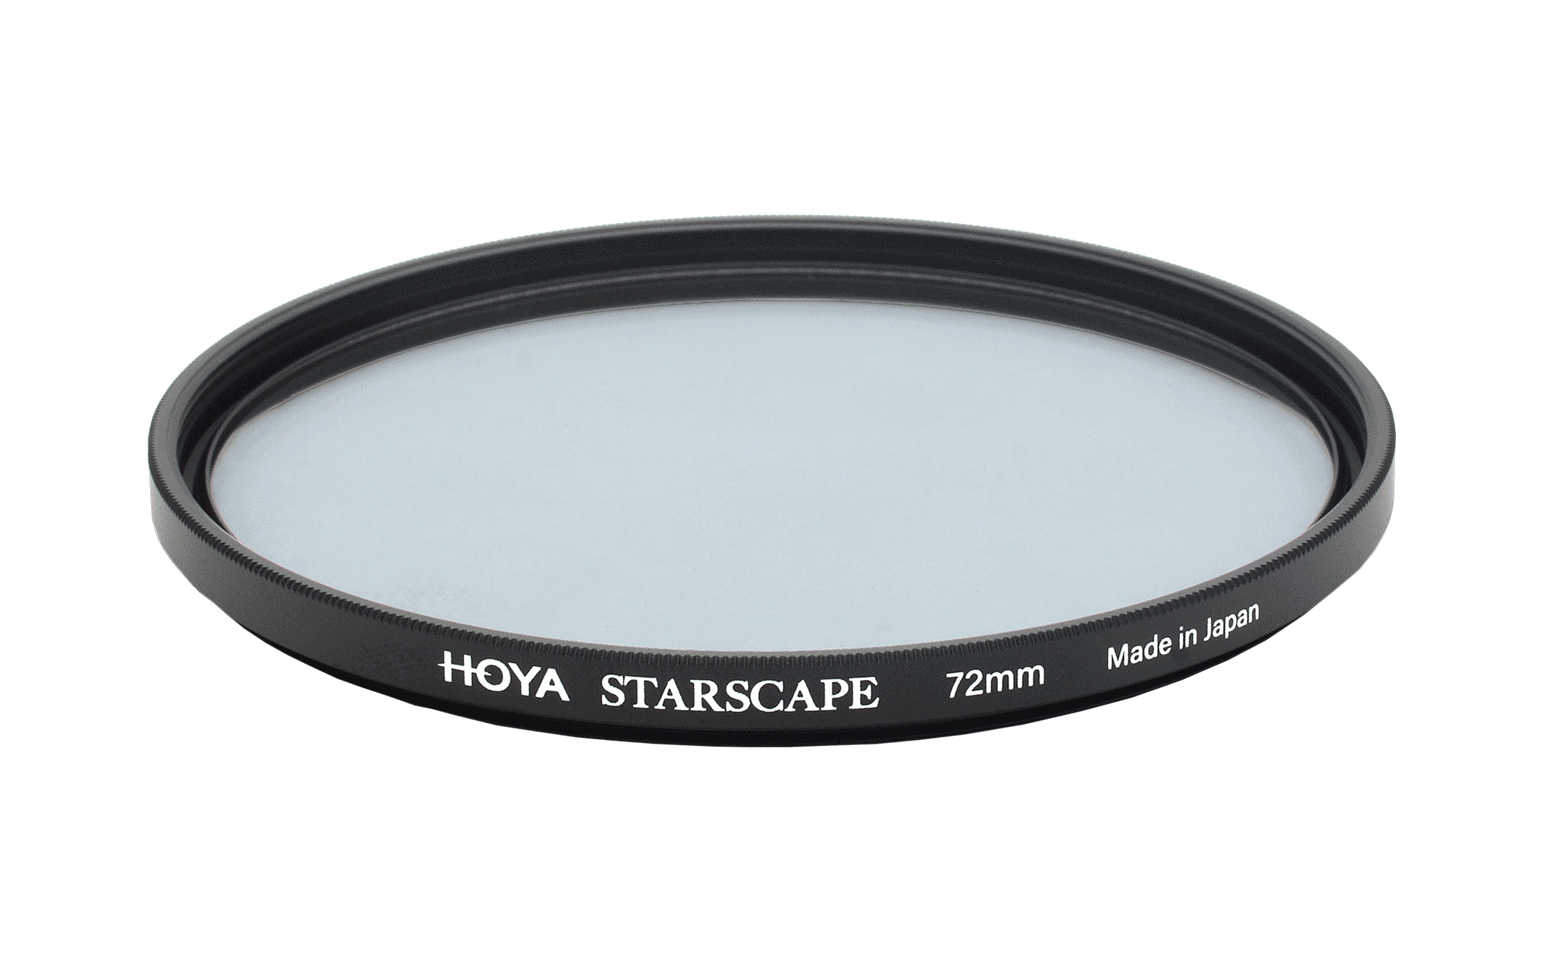 Hoya Starscape 49mm szűrő